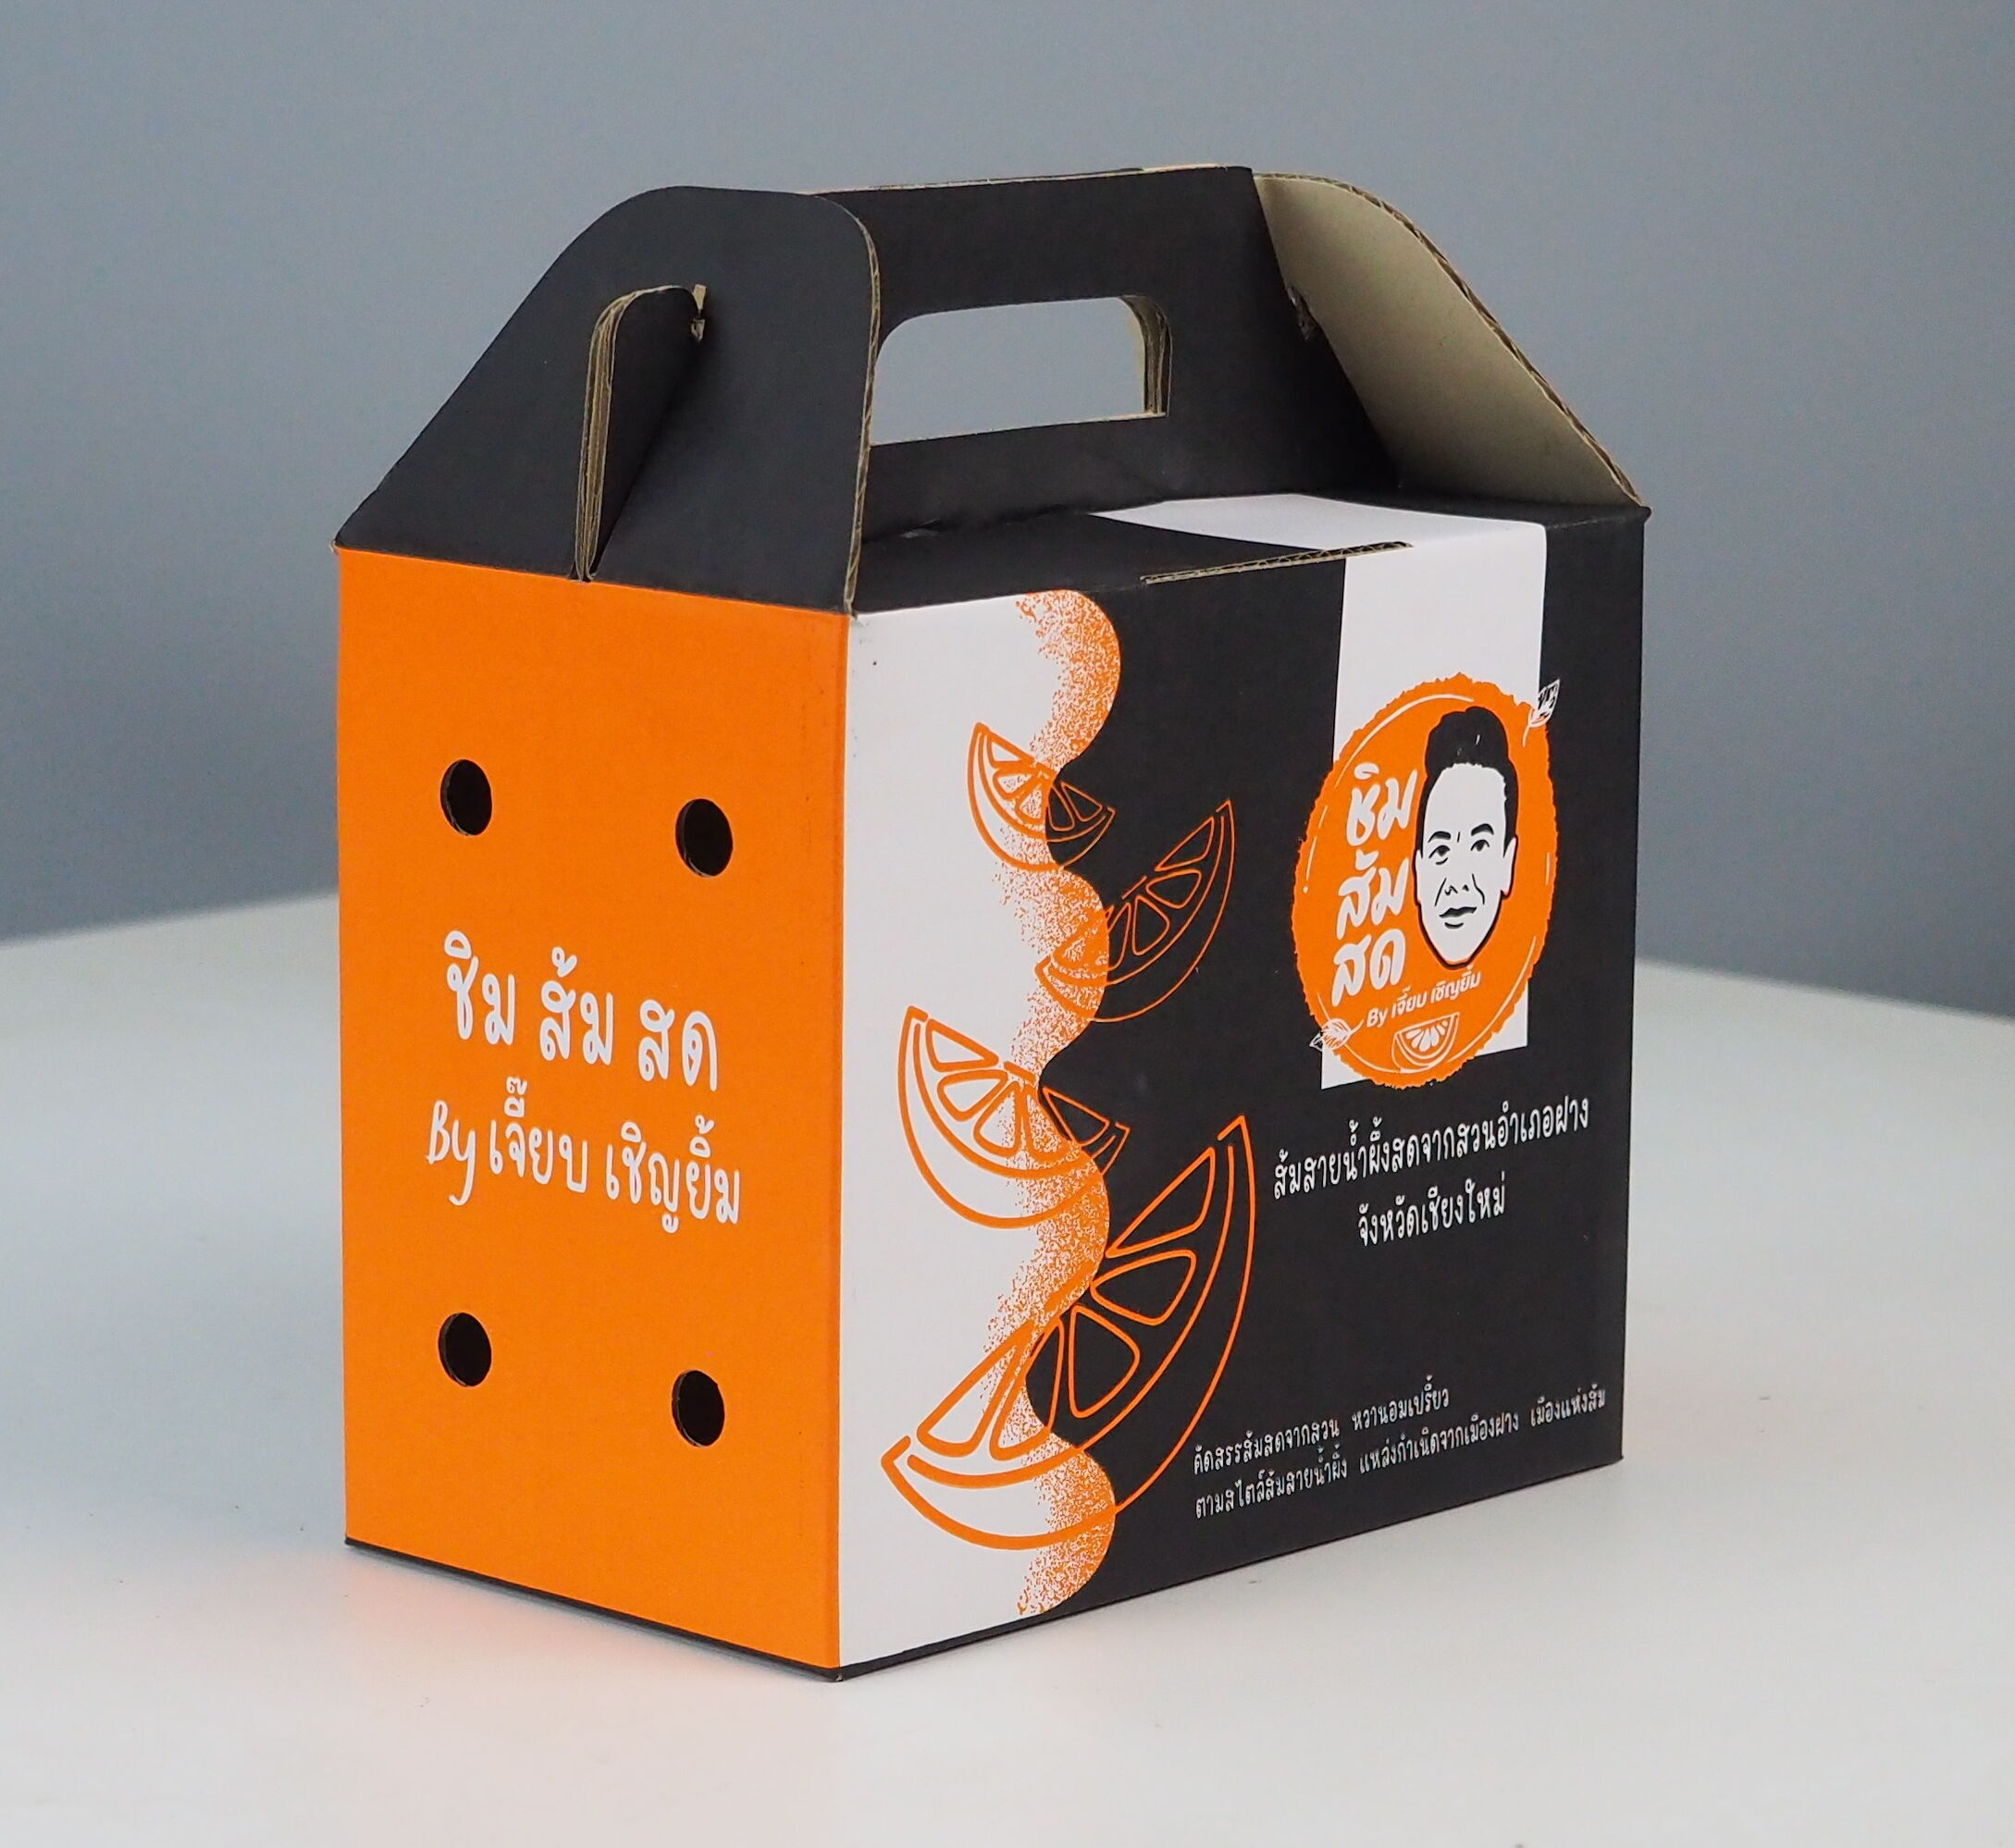 กล่องส้มสั่งผลิต ของ Brand ชิม ส้มสด By เจี๊ยบ เชิญยิ้ม เป็นการพิมพ์รูปเสมือนจริง สีในการพิมพ์ เป็นการพิมพ์ 2 สี กระดาษขาว ทำหใ้กล่องดูโดดเด่น